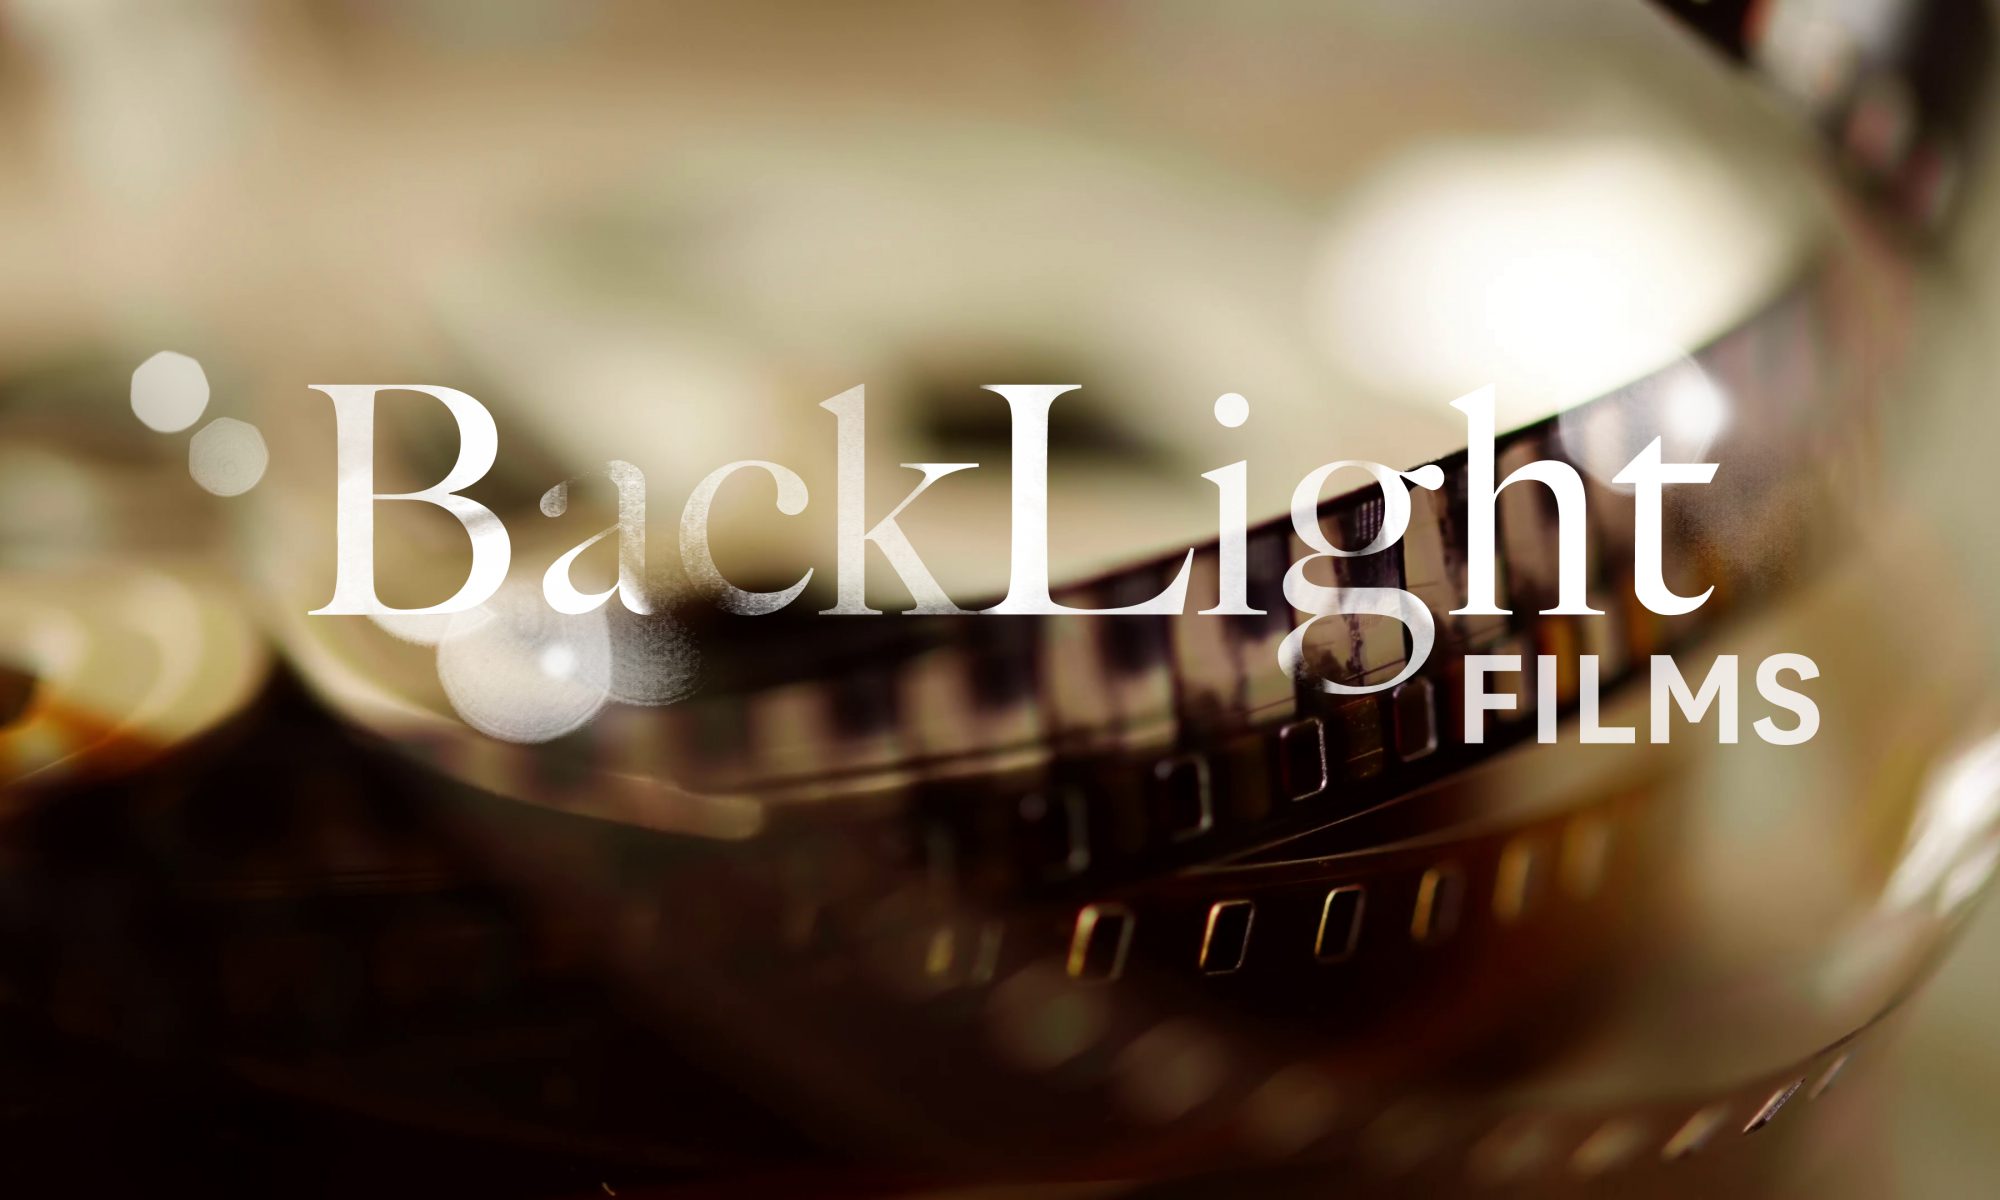 BackLight films